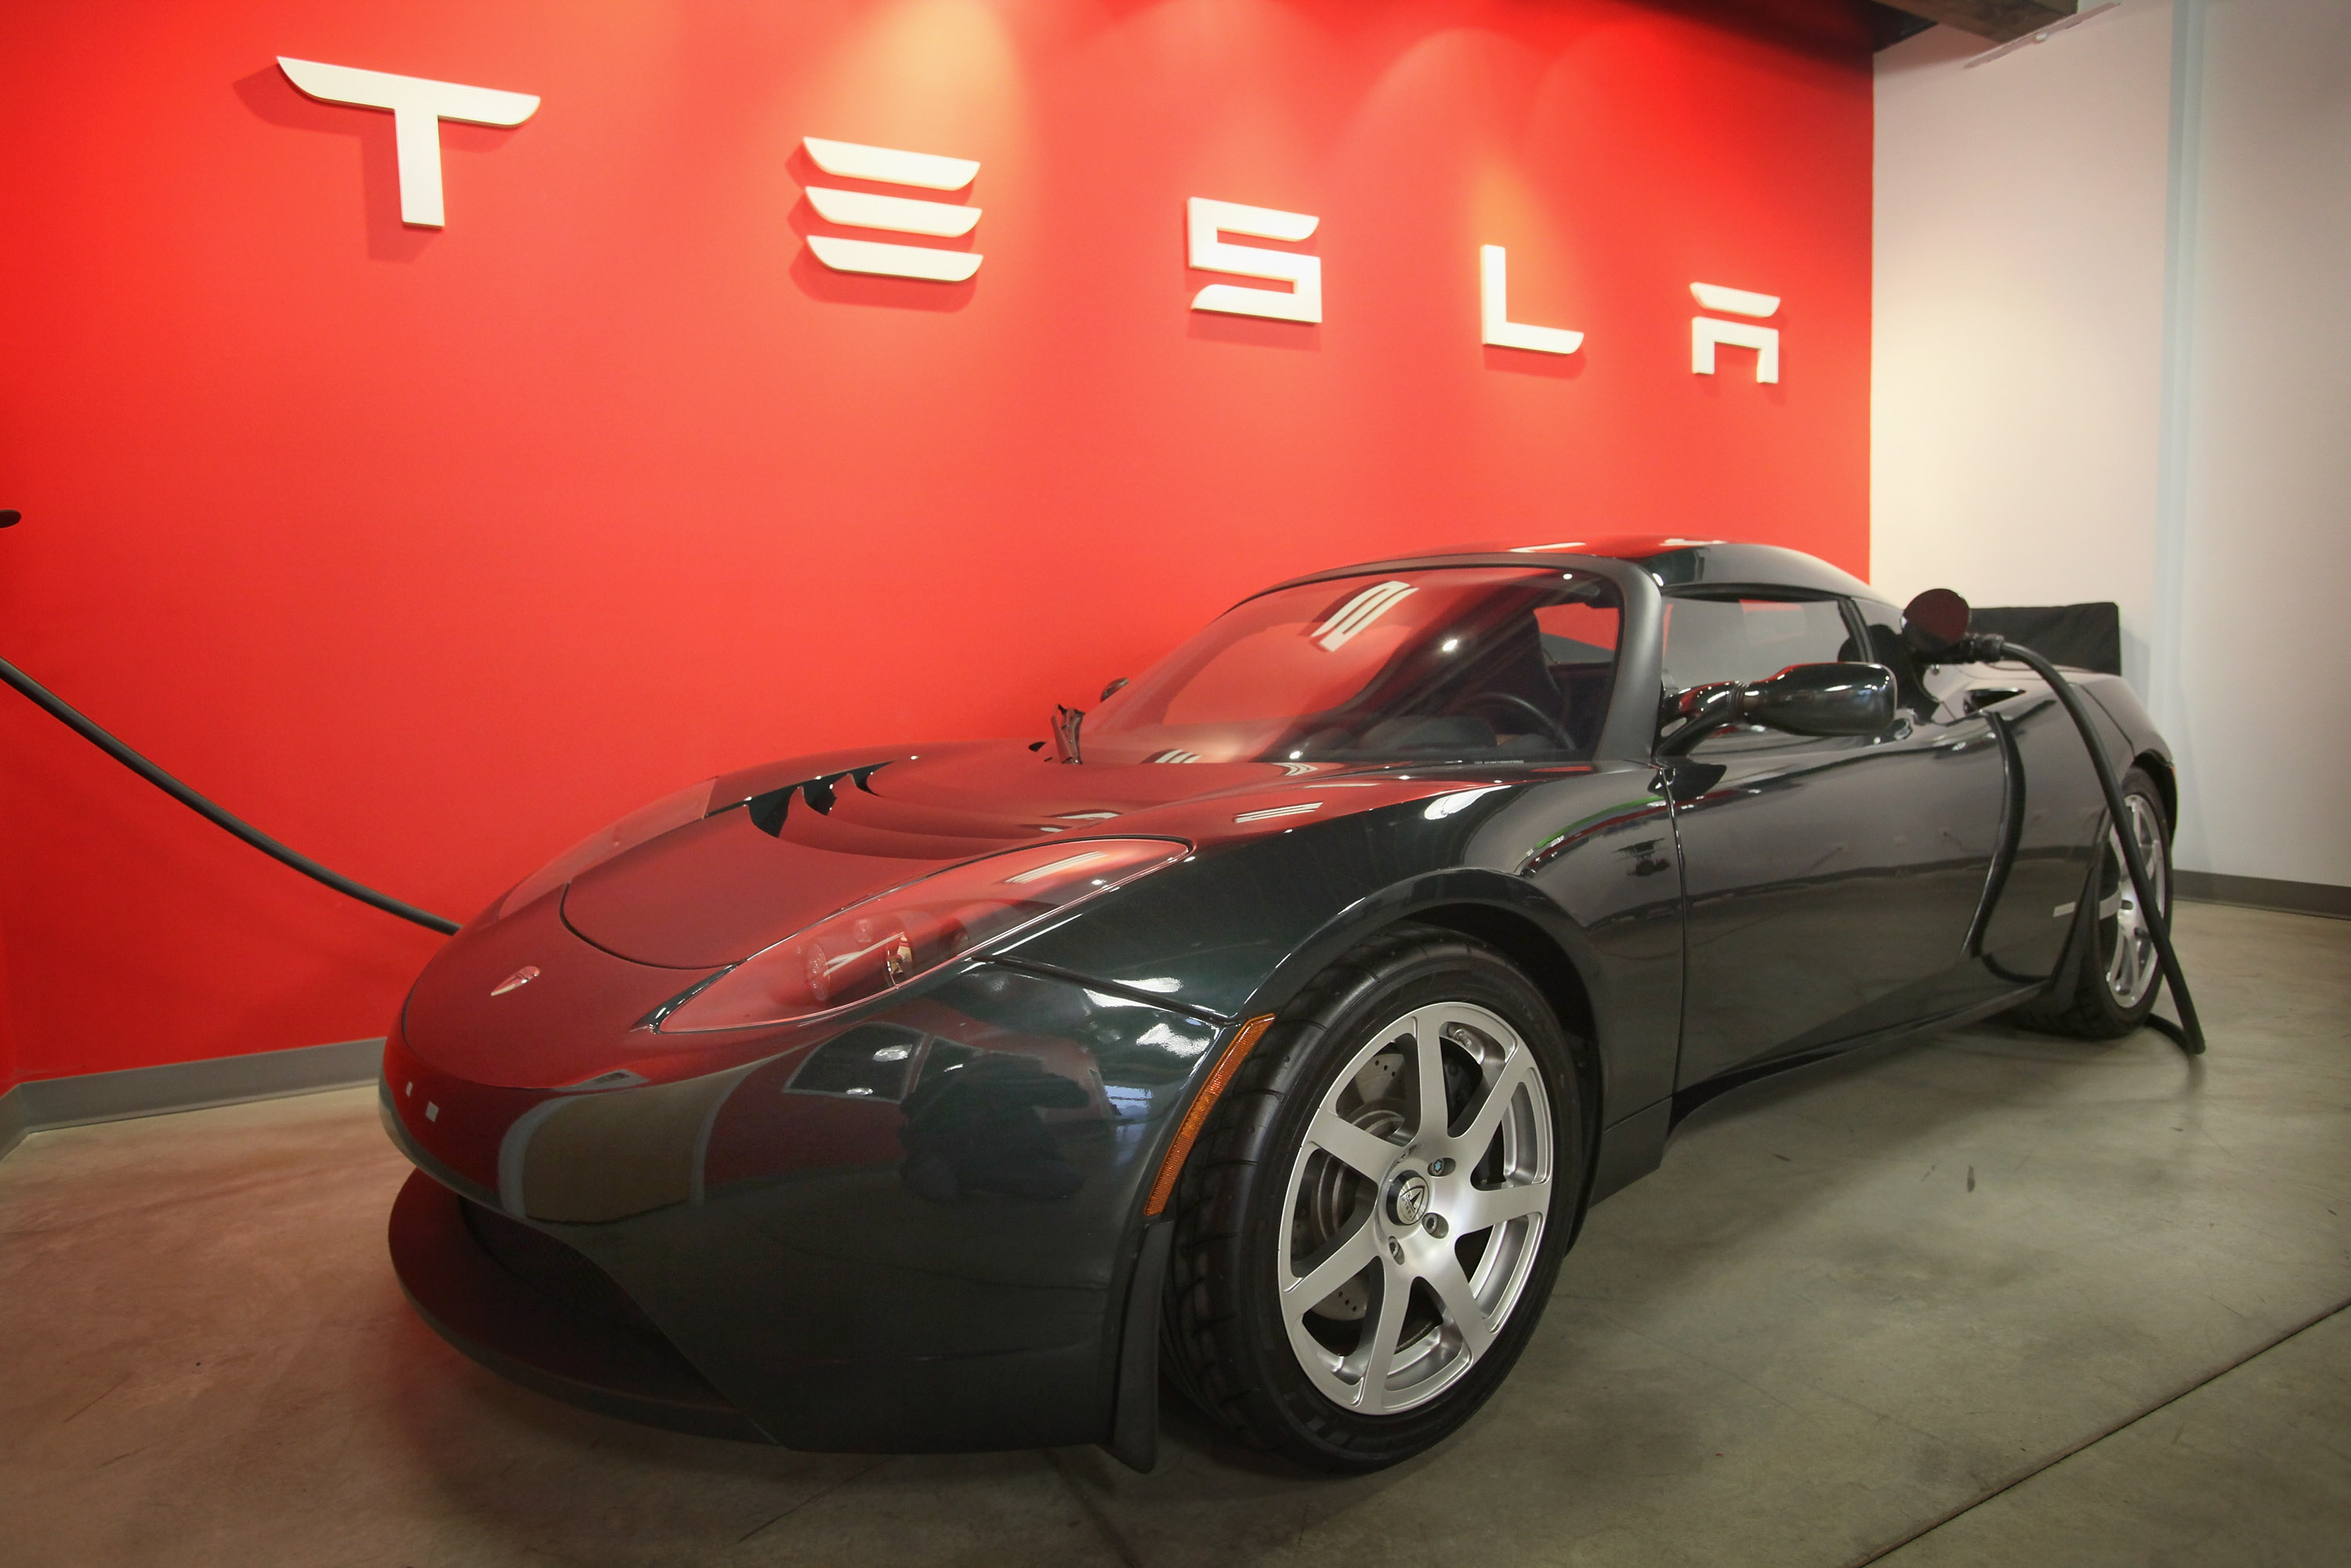 301-024 テスラ 1/18 ロードスター Tesla Roadster - buyfromhill.com